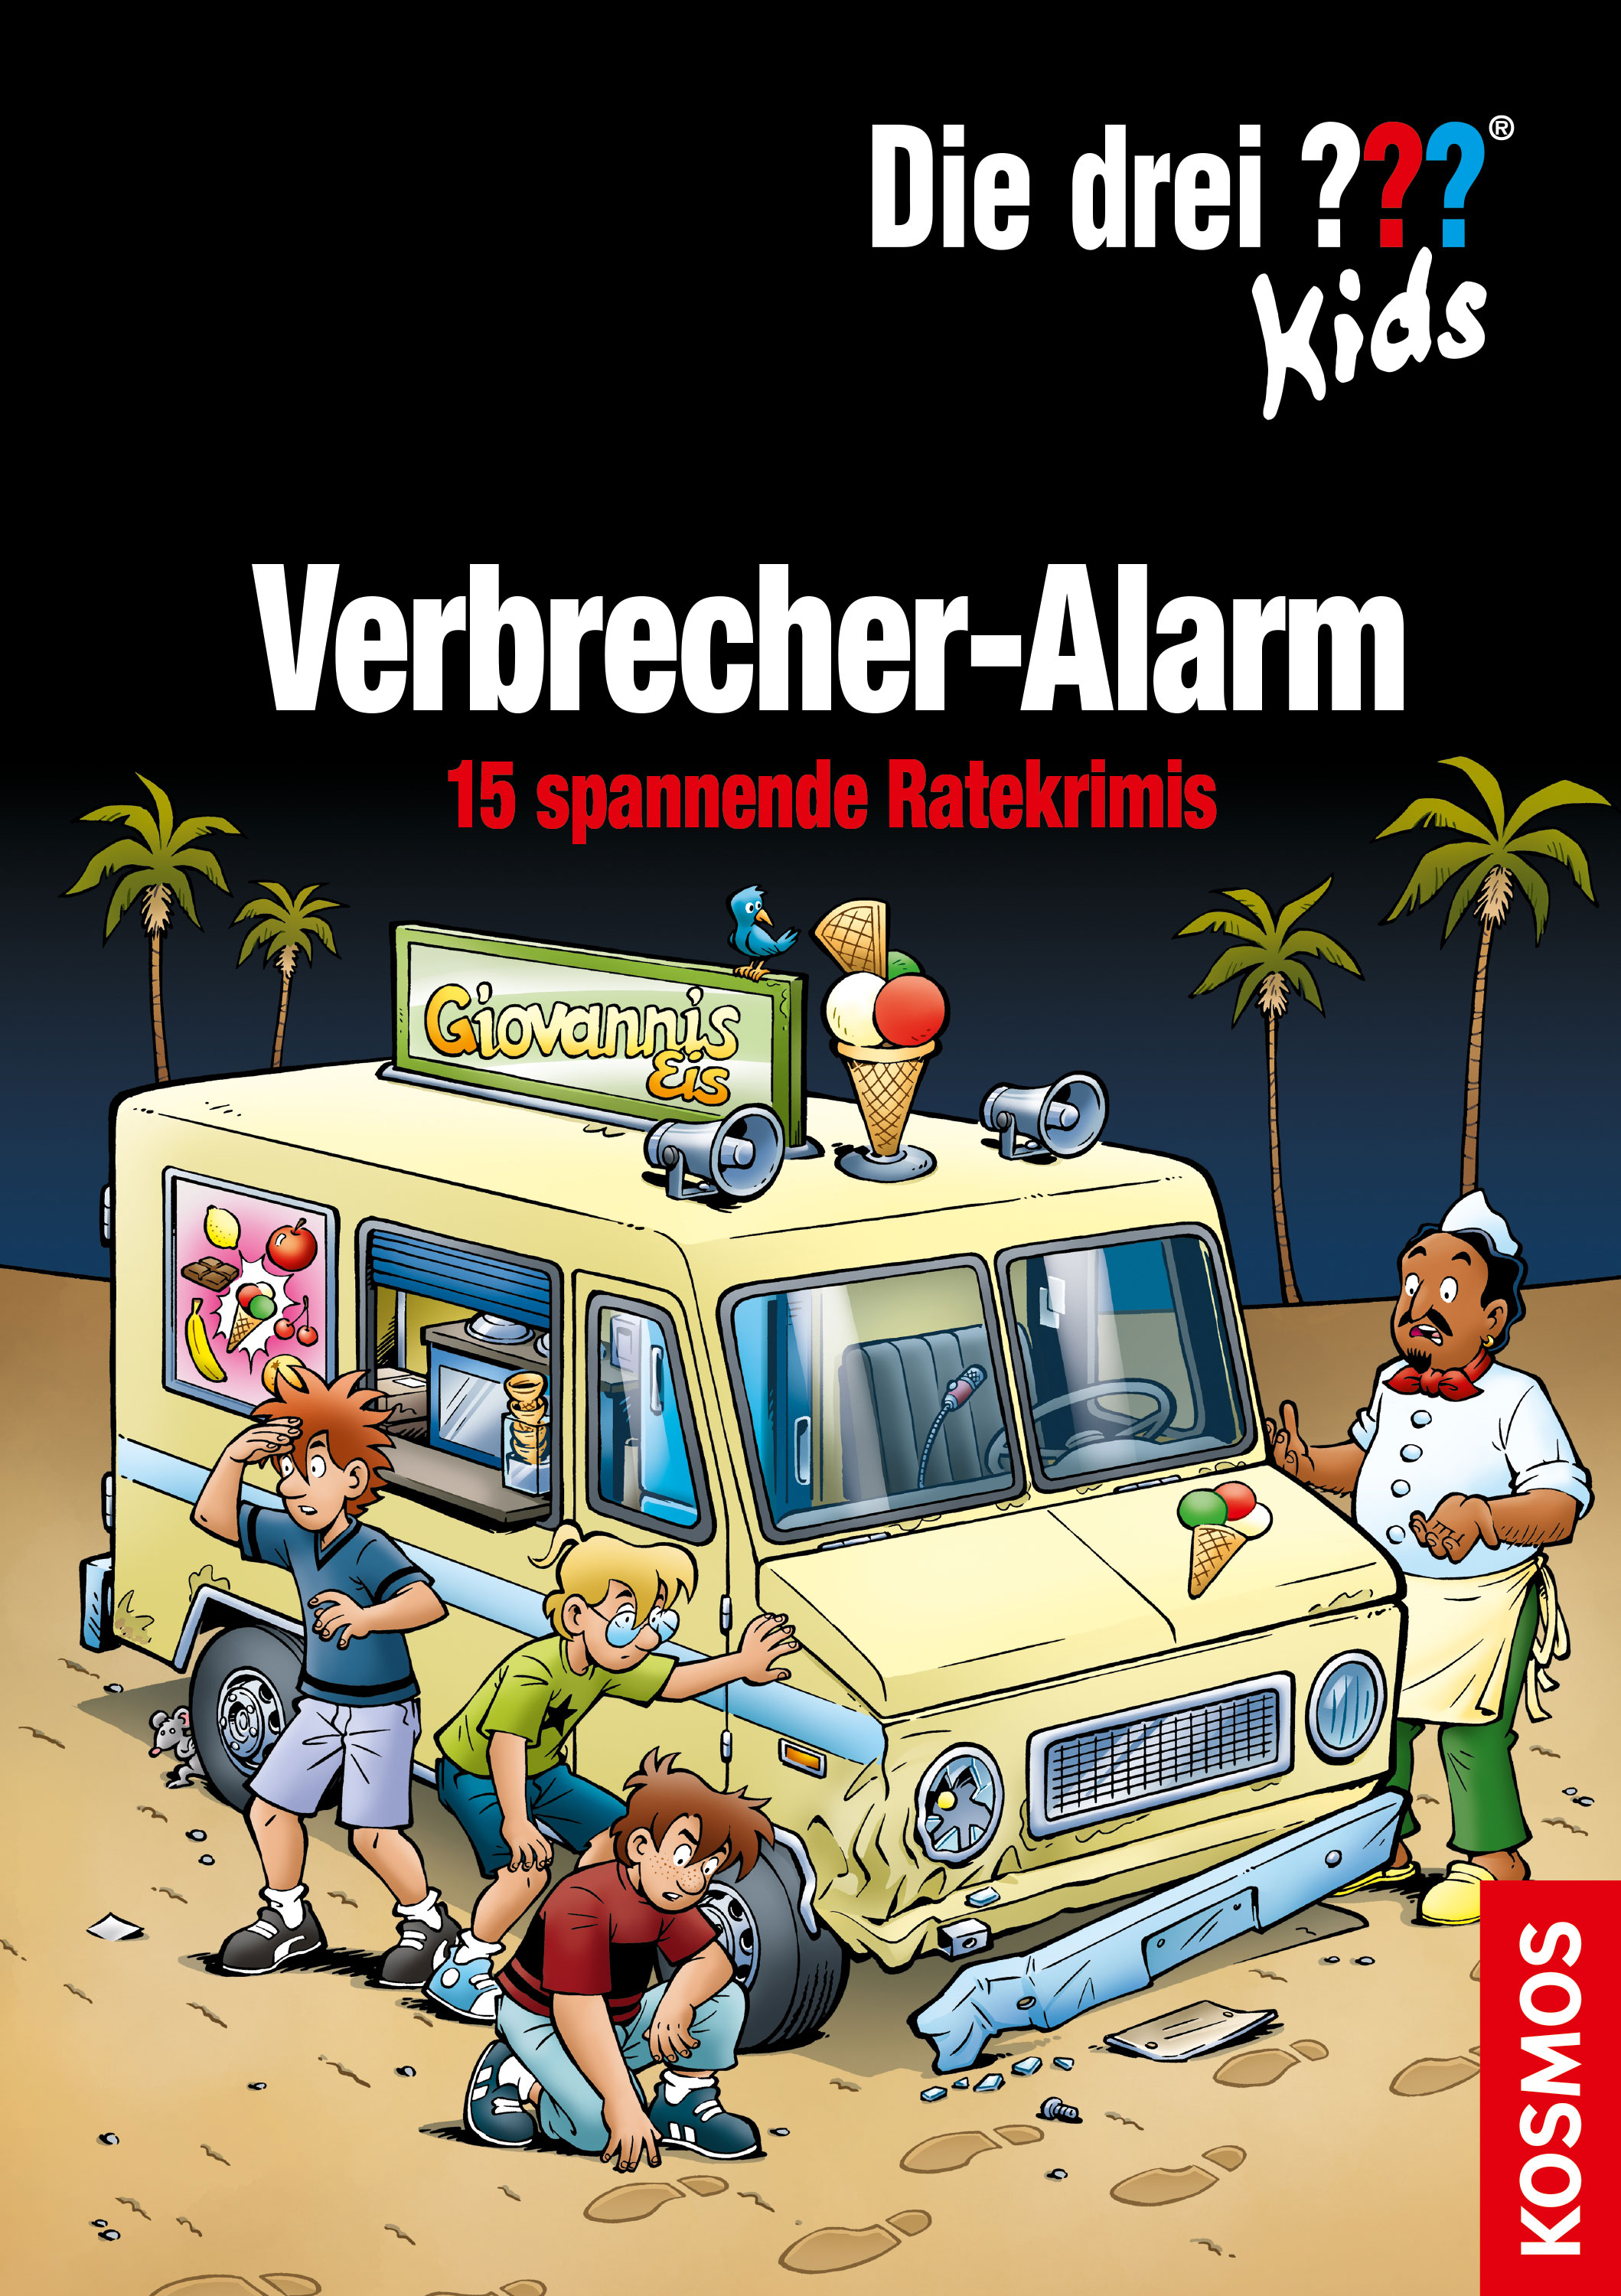 Die Drei ??? (Fragezeichen) Kids, Buch-Special: Verbrecher-Alarm